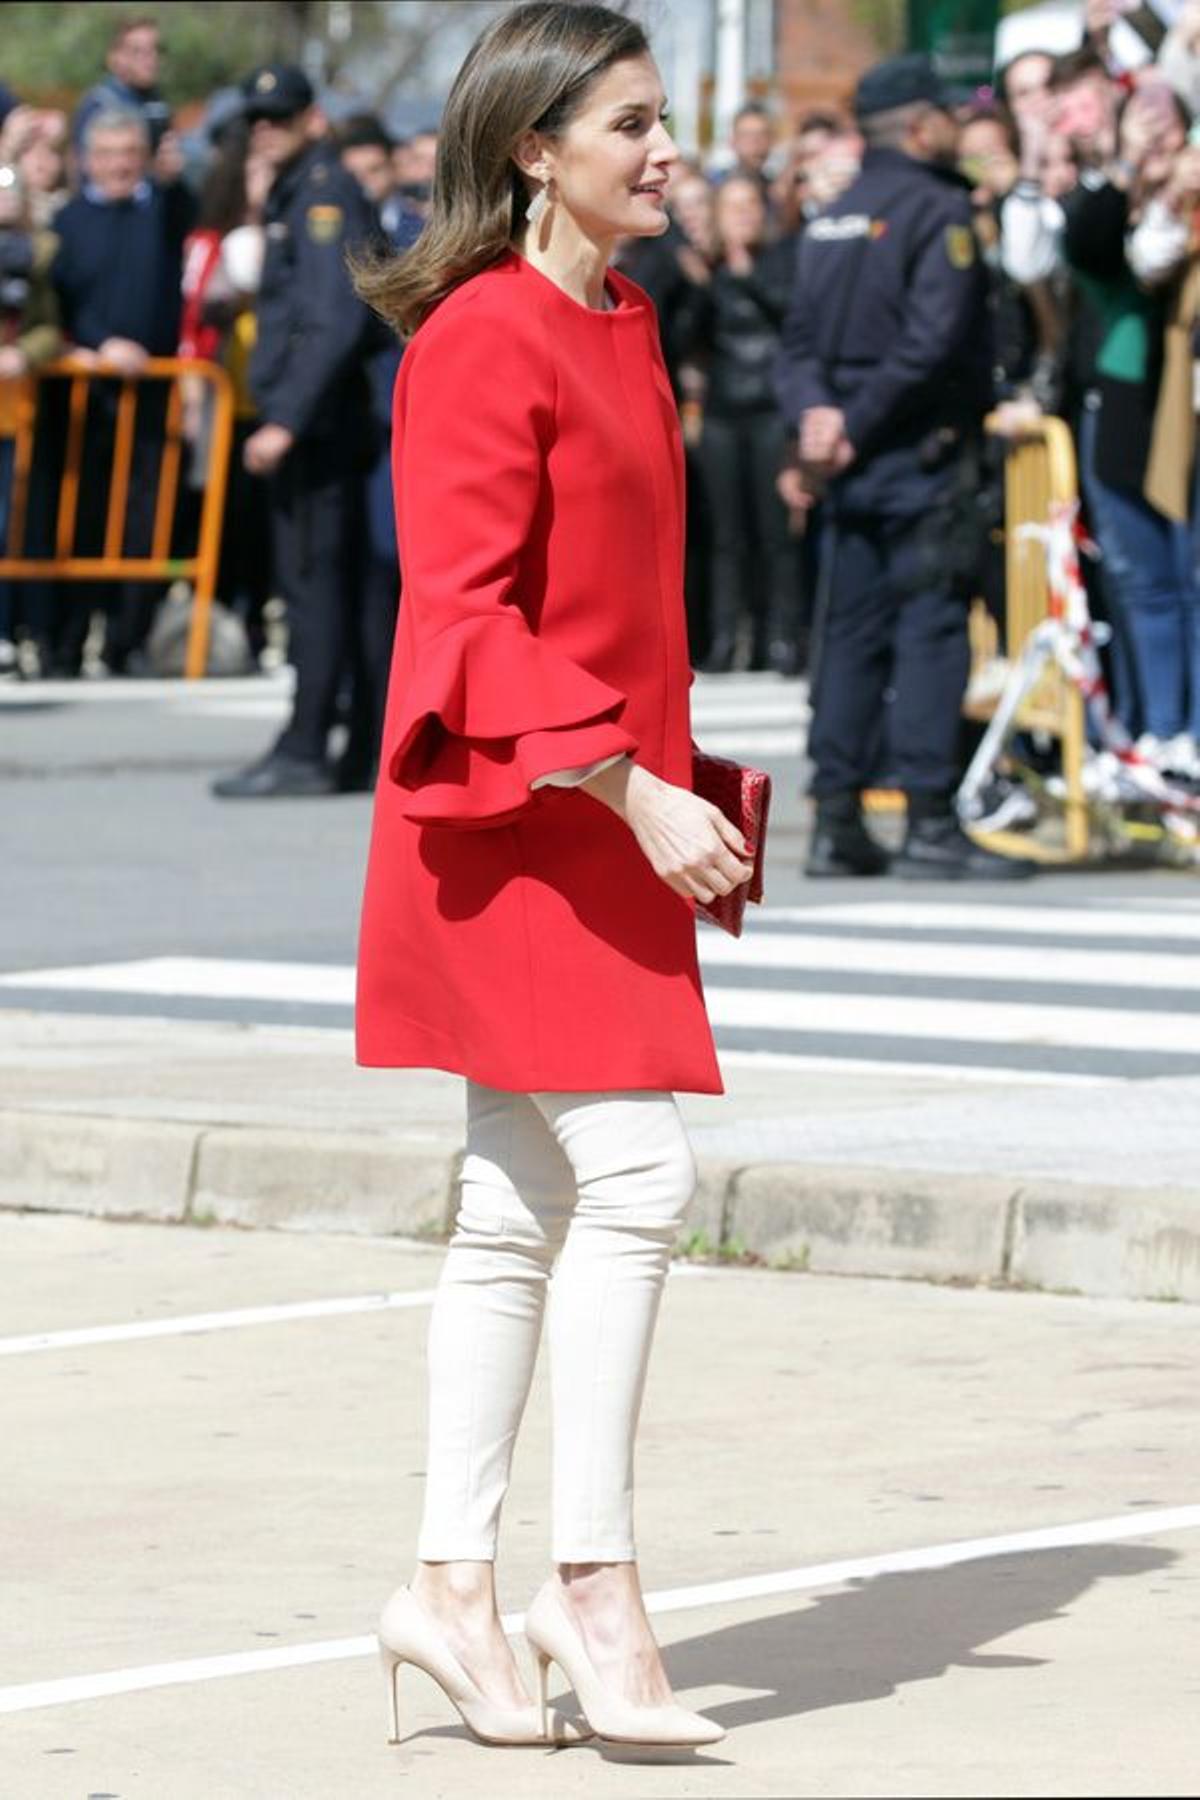 Letizia Ortiz y su abrigo rojo con volantes en las mangas de Zara y pantalones pitillo en blanco